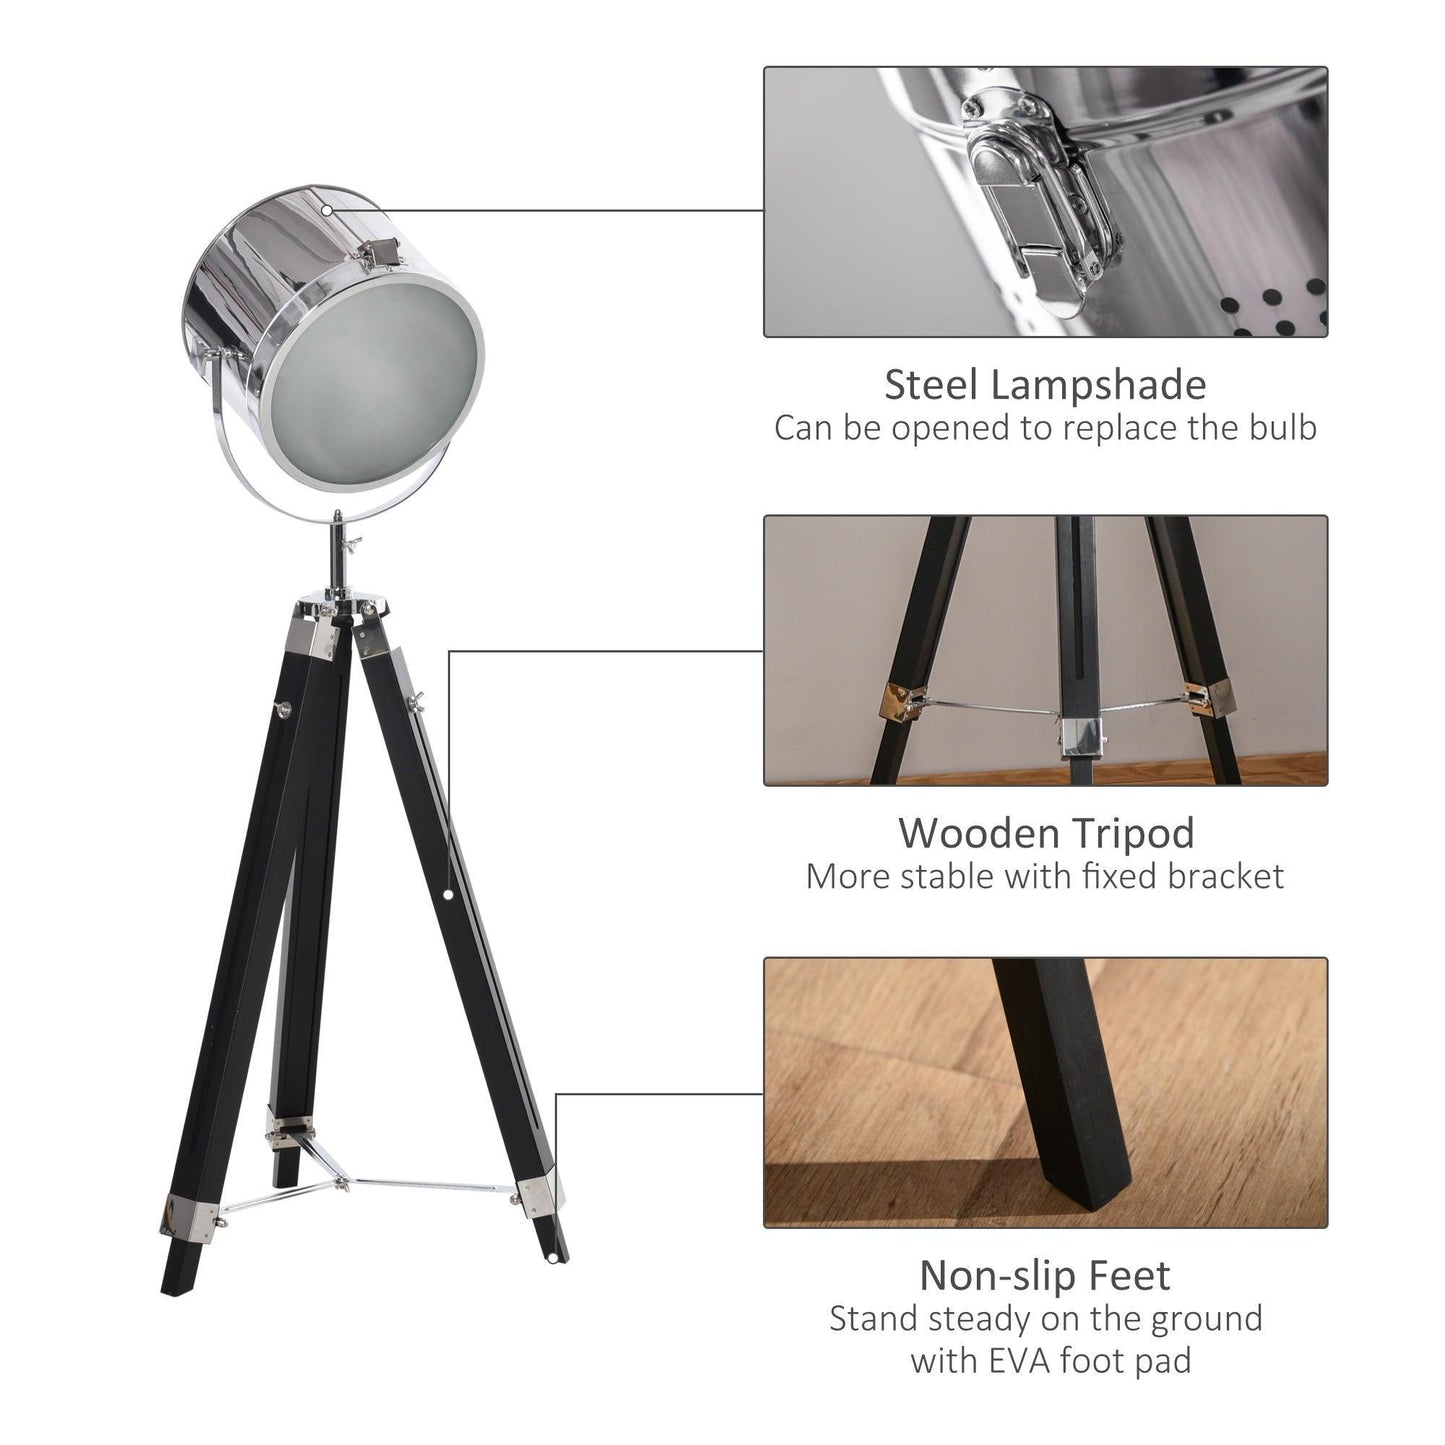 HOMCOM Industrial Adjustable Floor Lamp, Wood Legs, Black - ALL4U RETAILER LTD